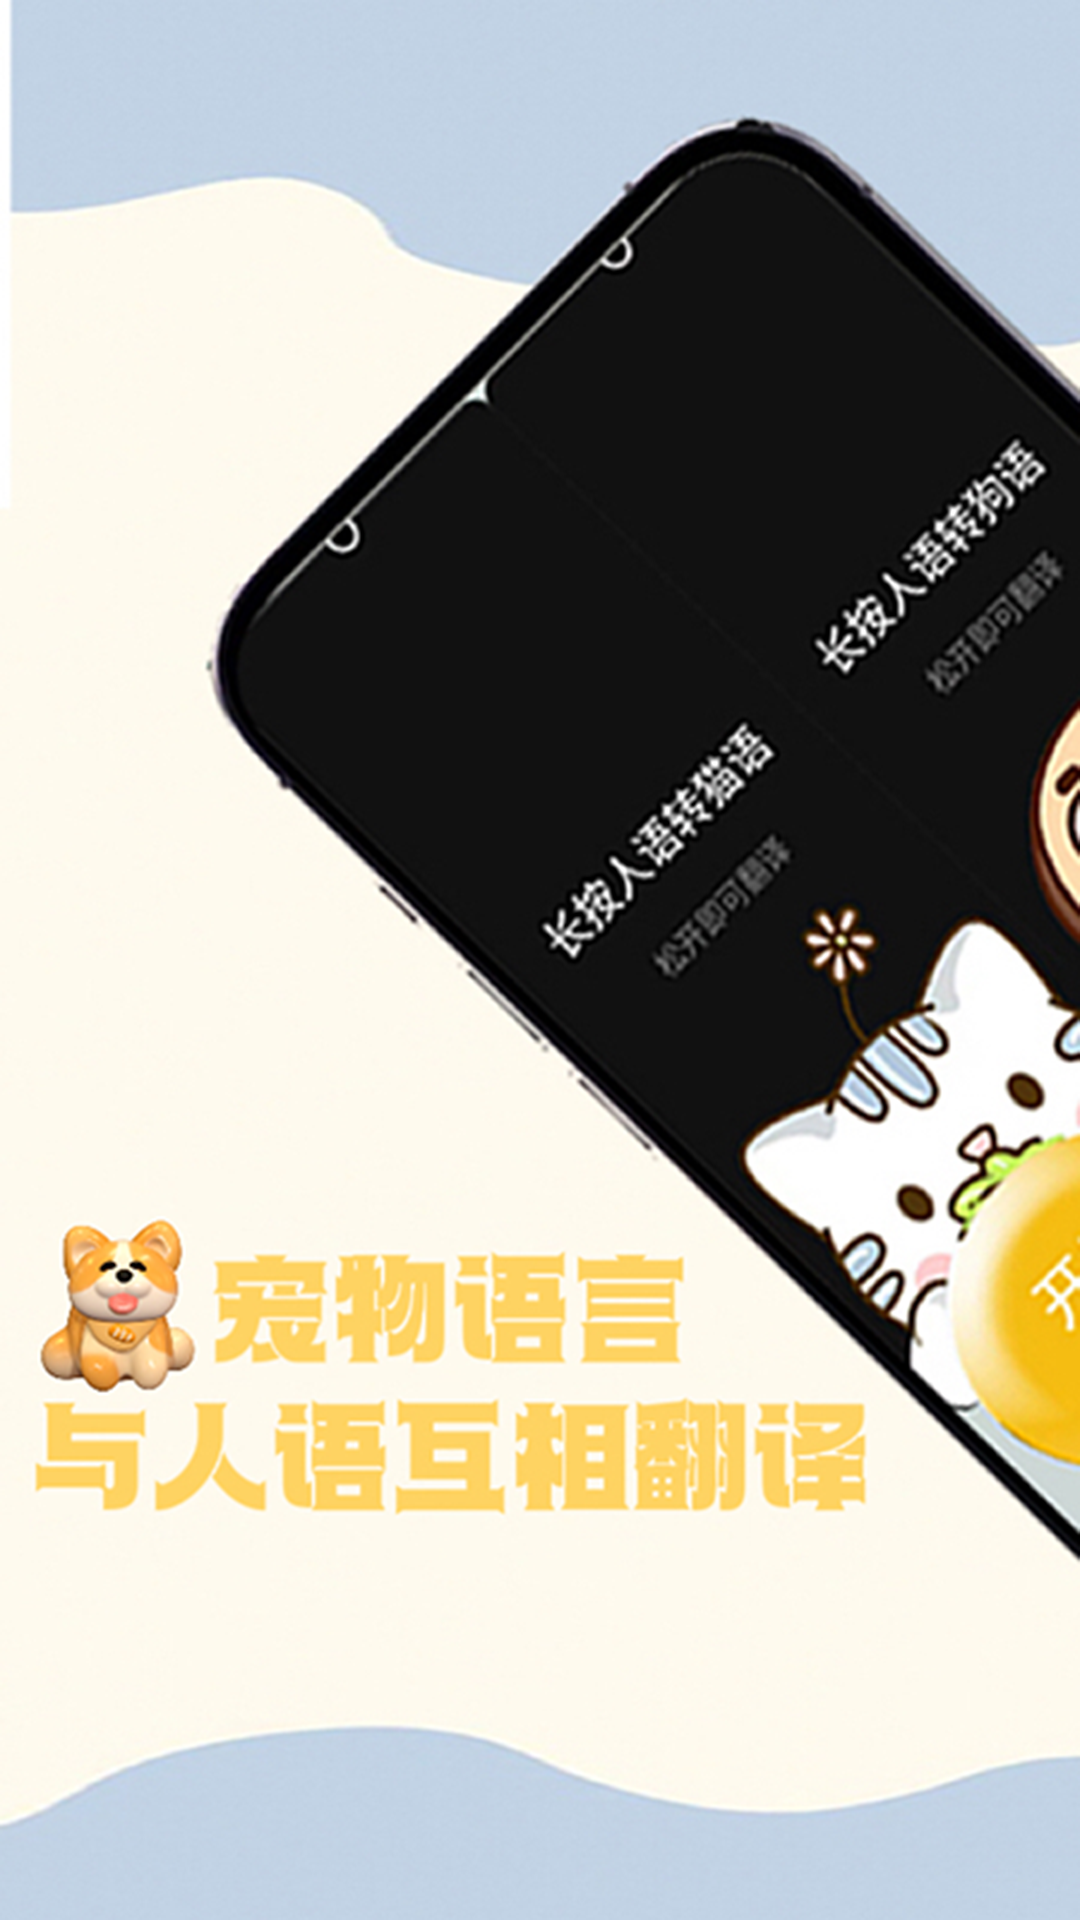 猫狗交谈翻译器app图片1